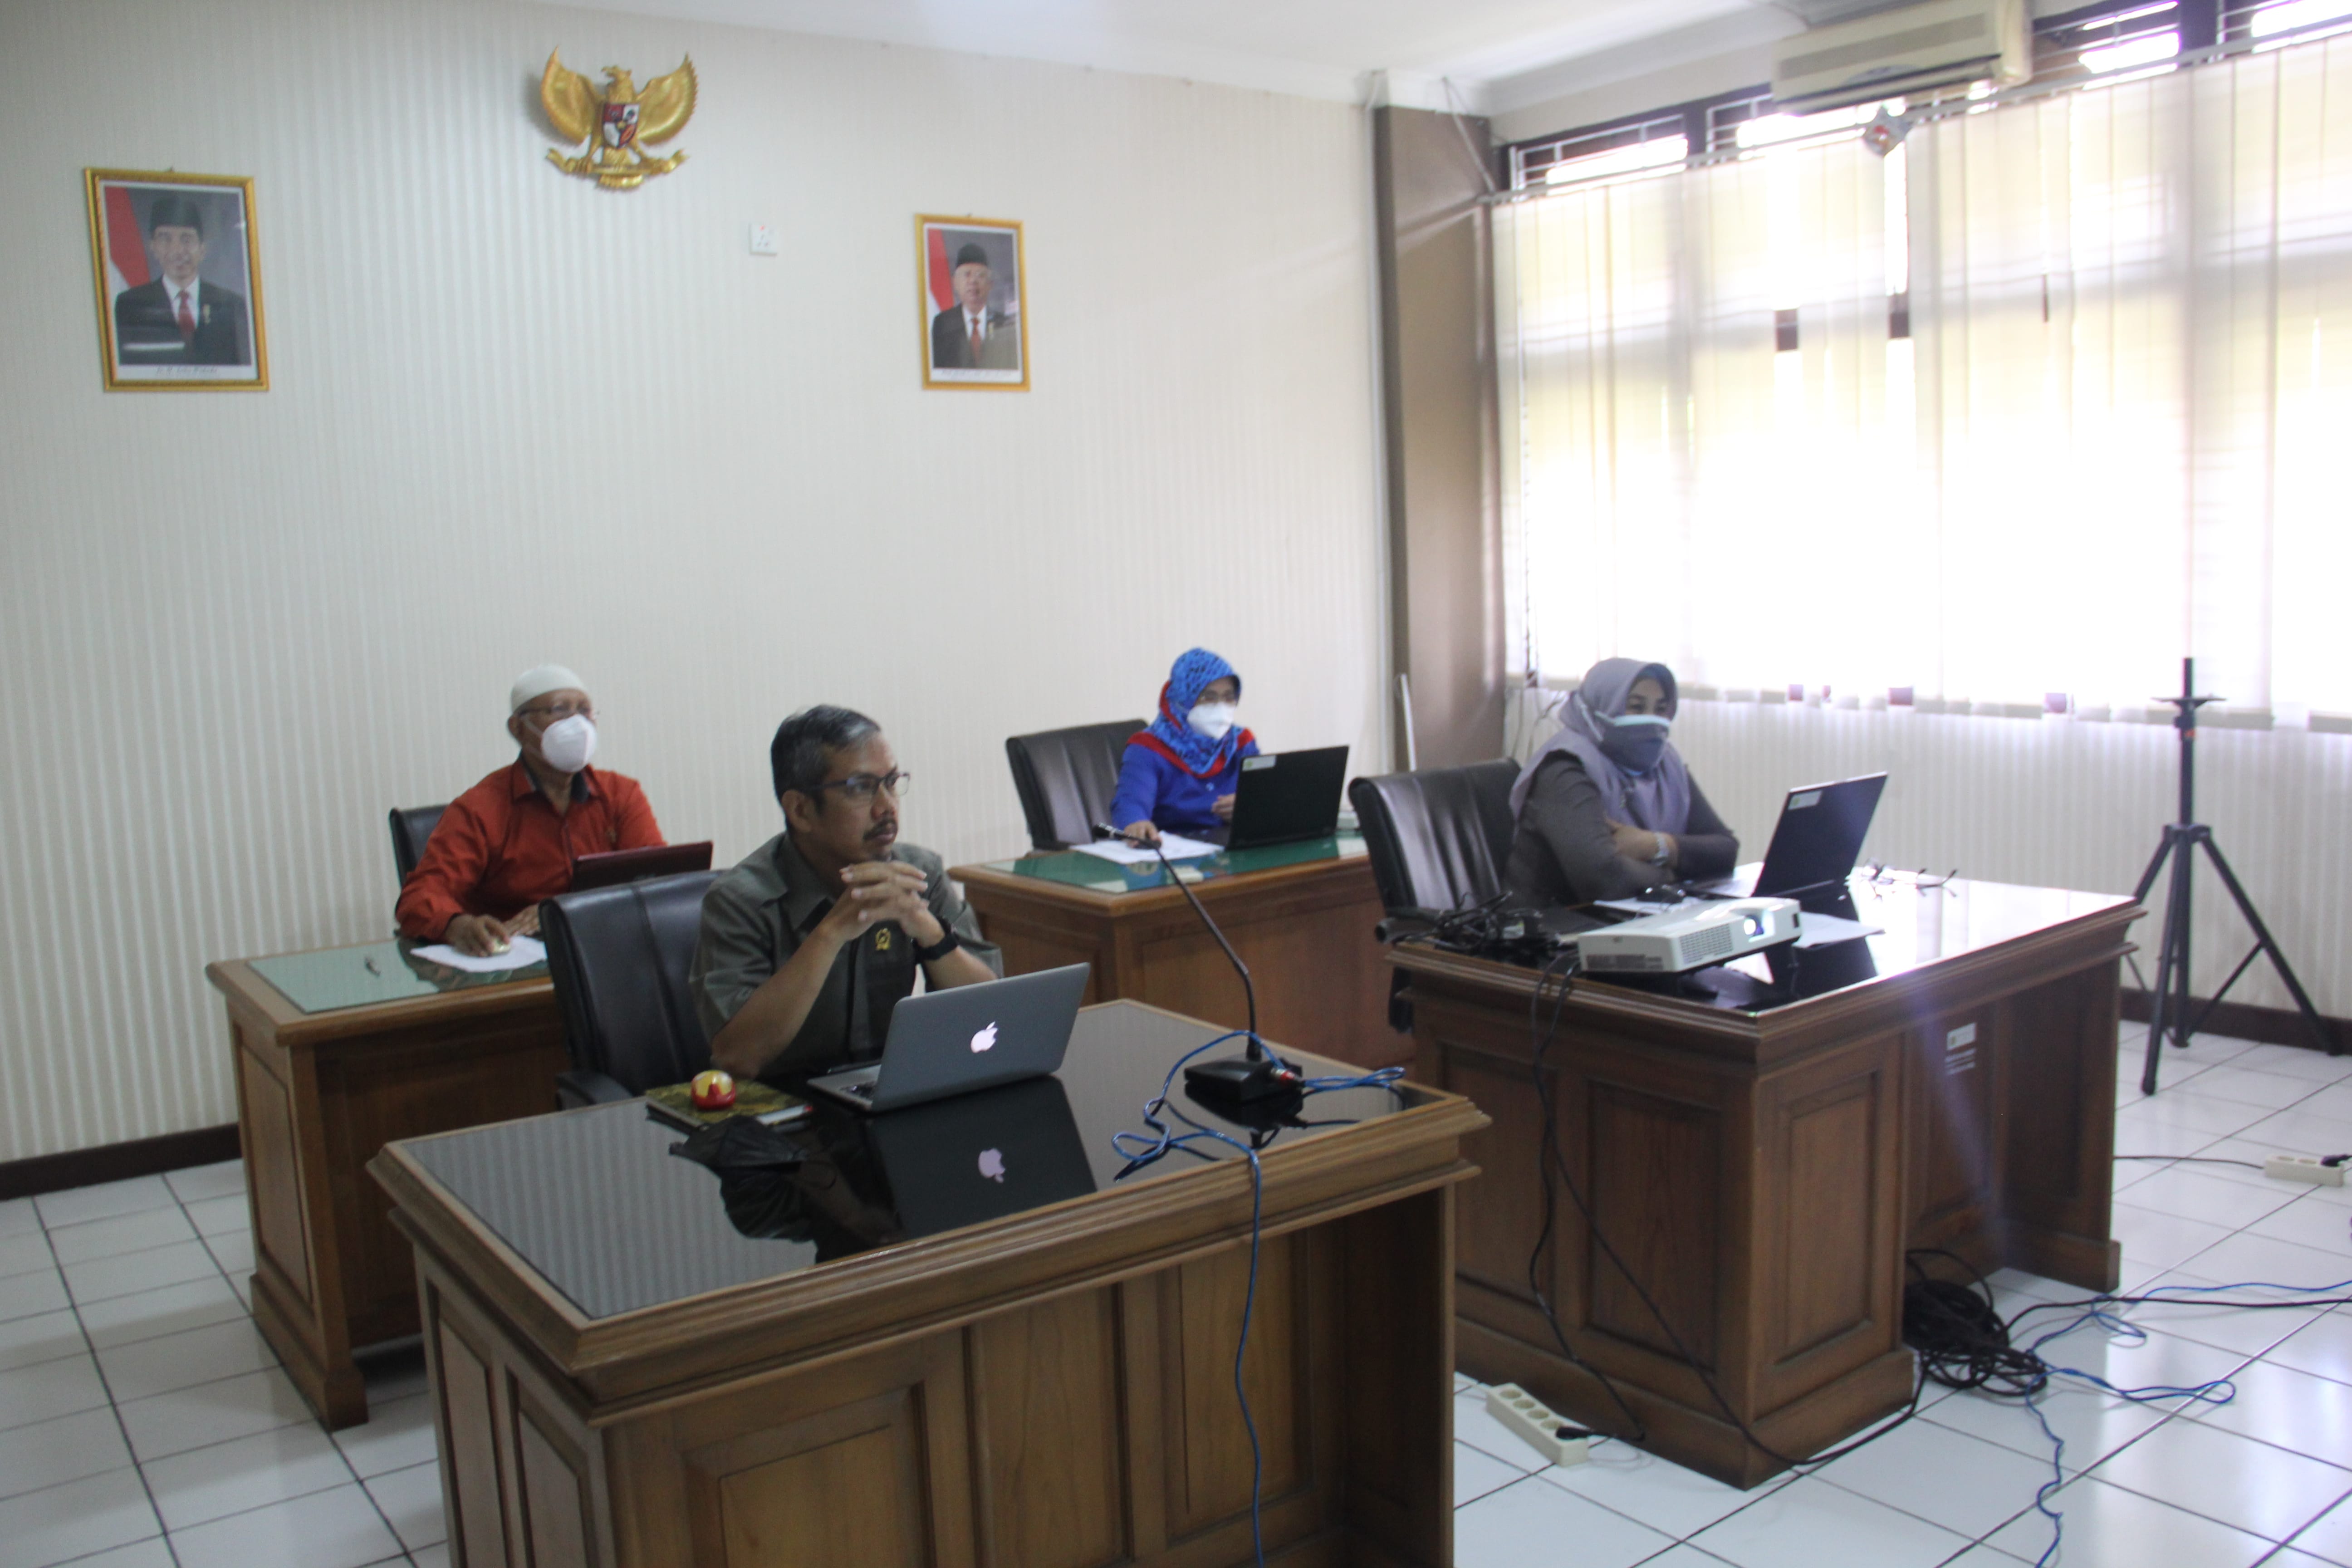 Penelitian Kajian Restorative Justice Dari Perspectif Filosofis, Normatif, Praktik,  dan Persepsi Hakim di wilayah Hukum Yogyakarta